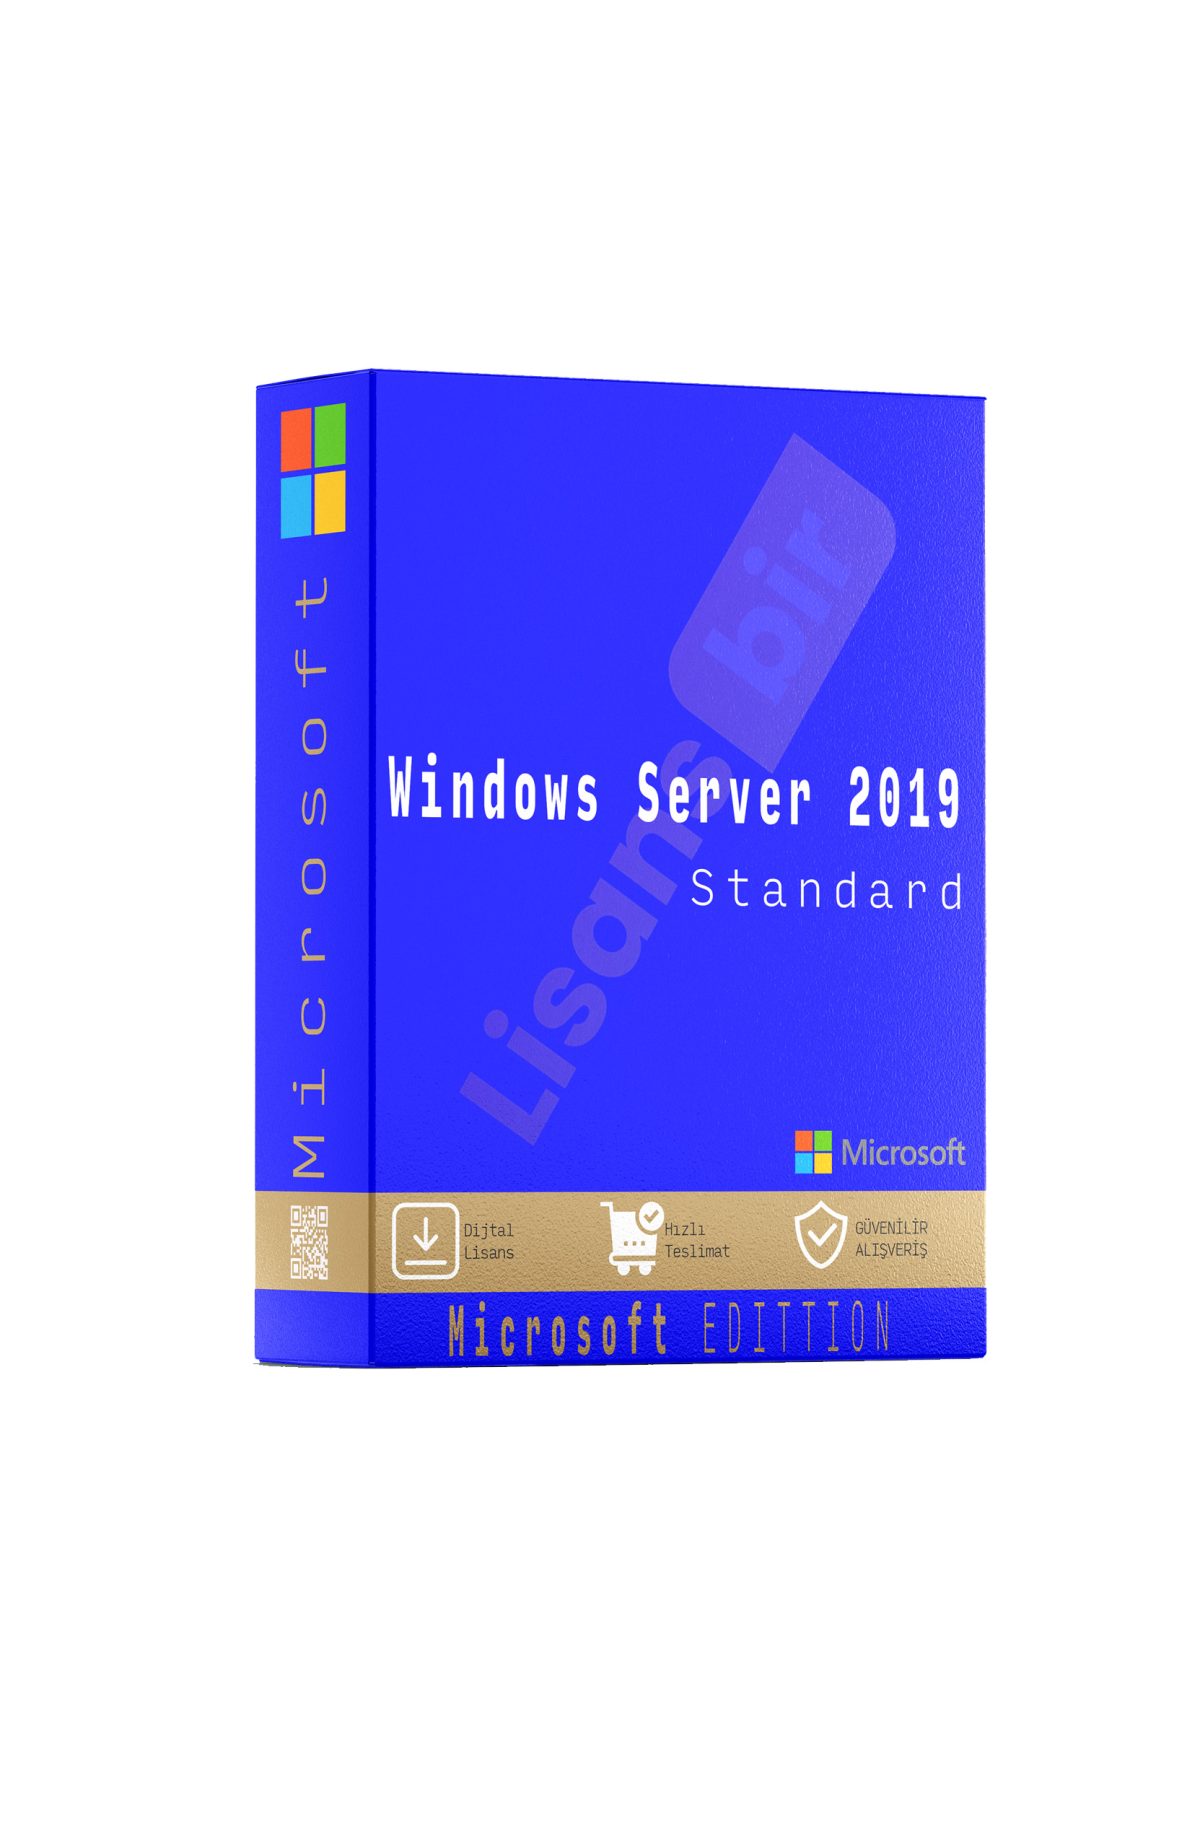 Windows Server 2019 Standard özellikleri ve çekici yönleri hakkında daha fazla bilgi için Lisansbir ürün sayfasını ziyaret edebilirsiniz.